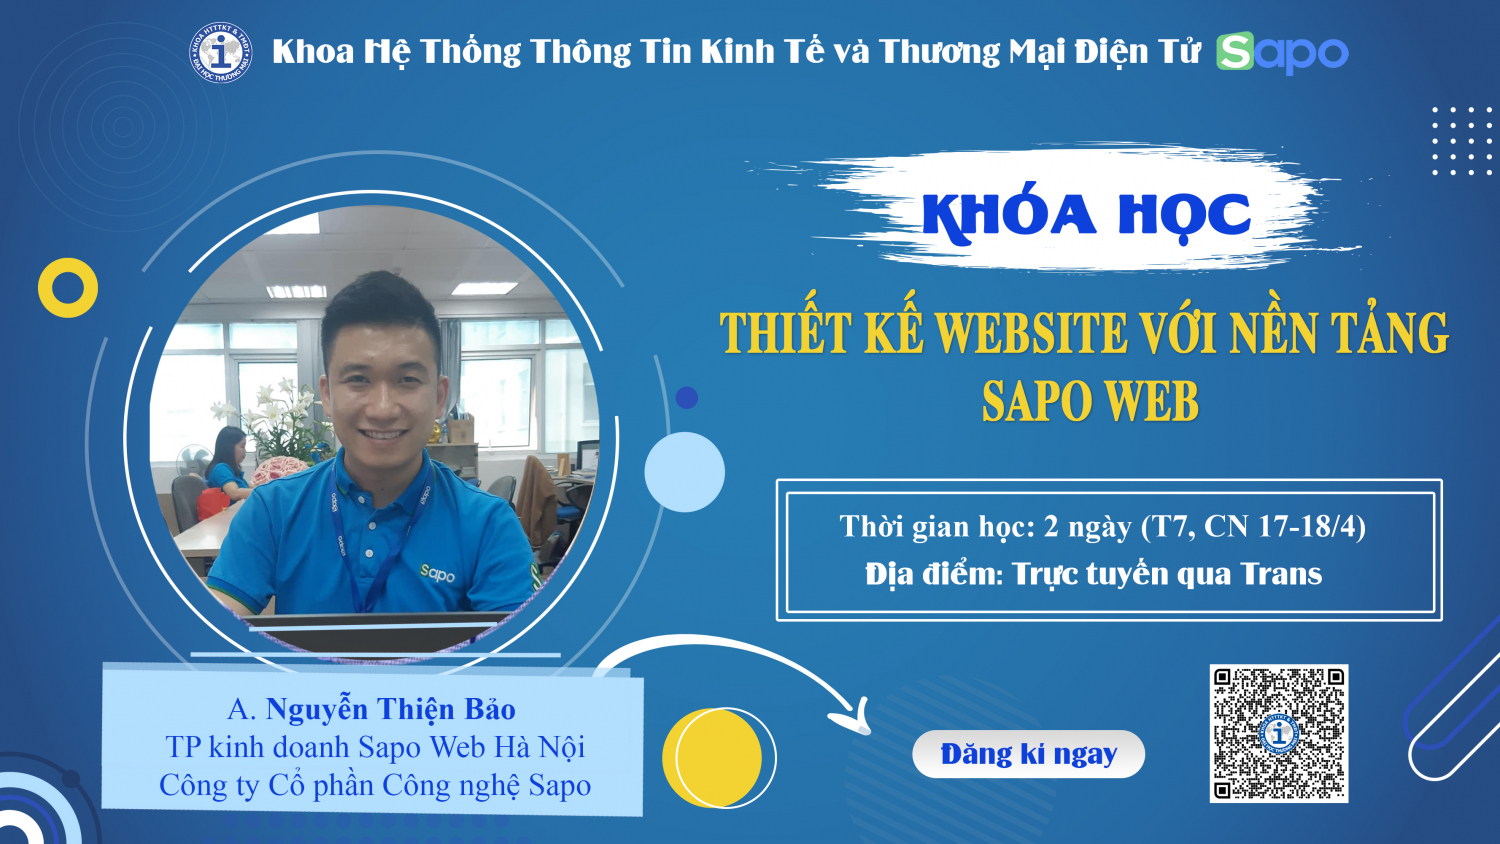 Khóa học: “Thiết kế website với nền tảng Sapo Web”